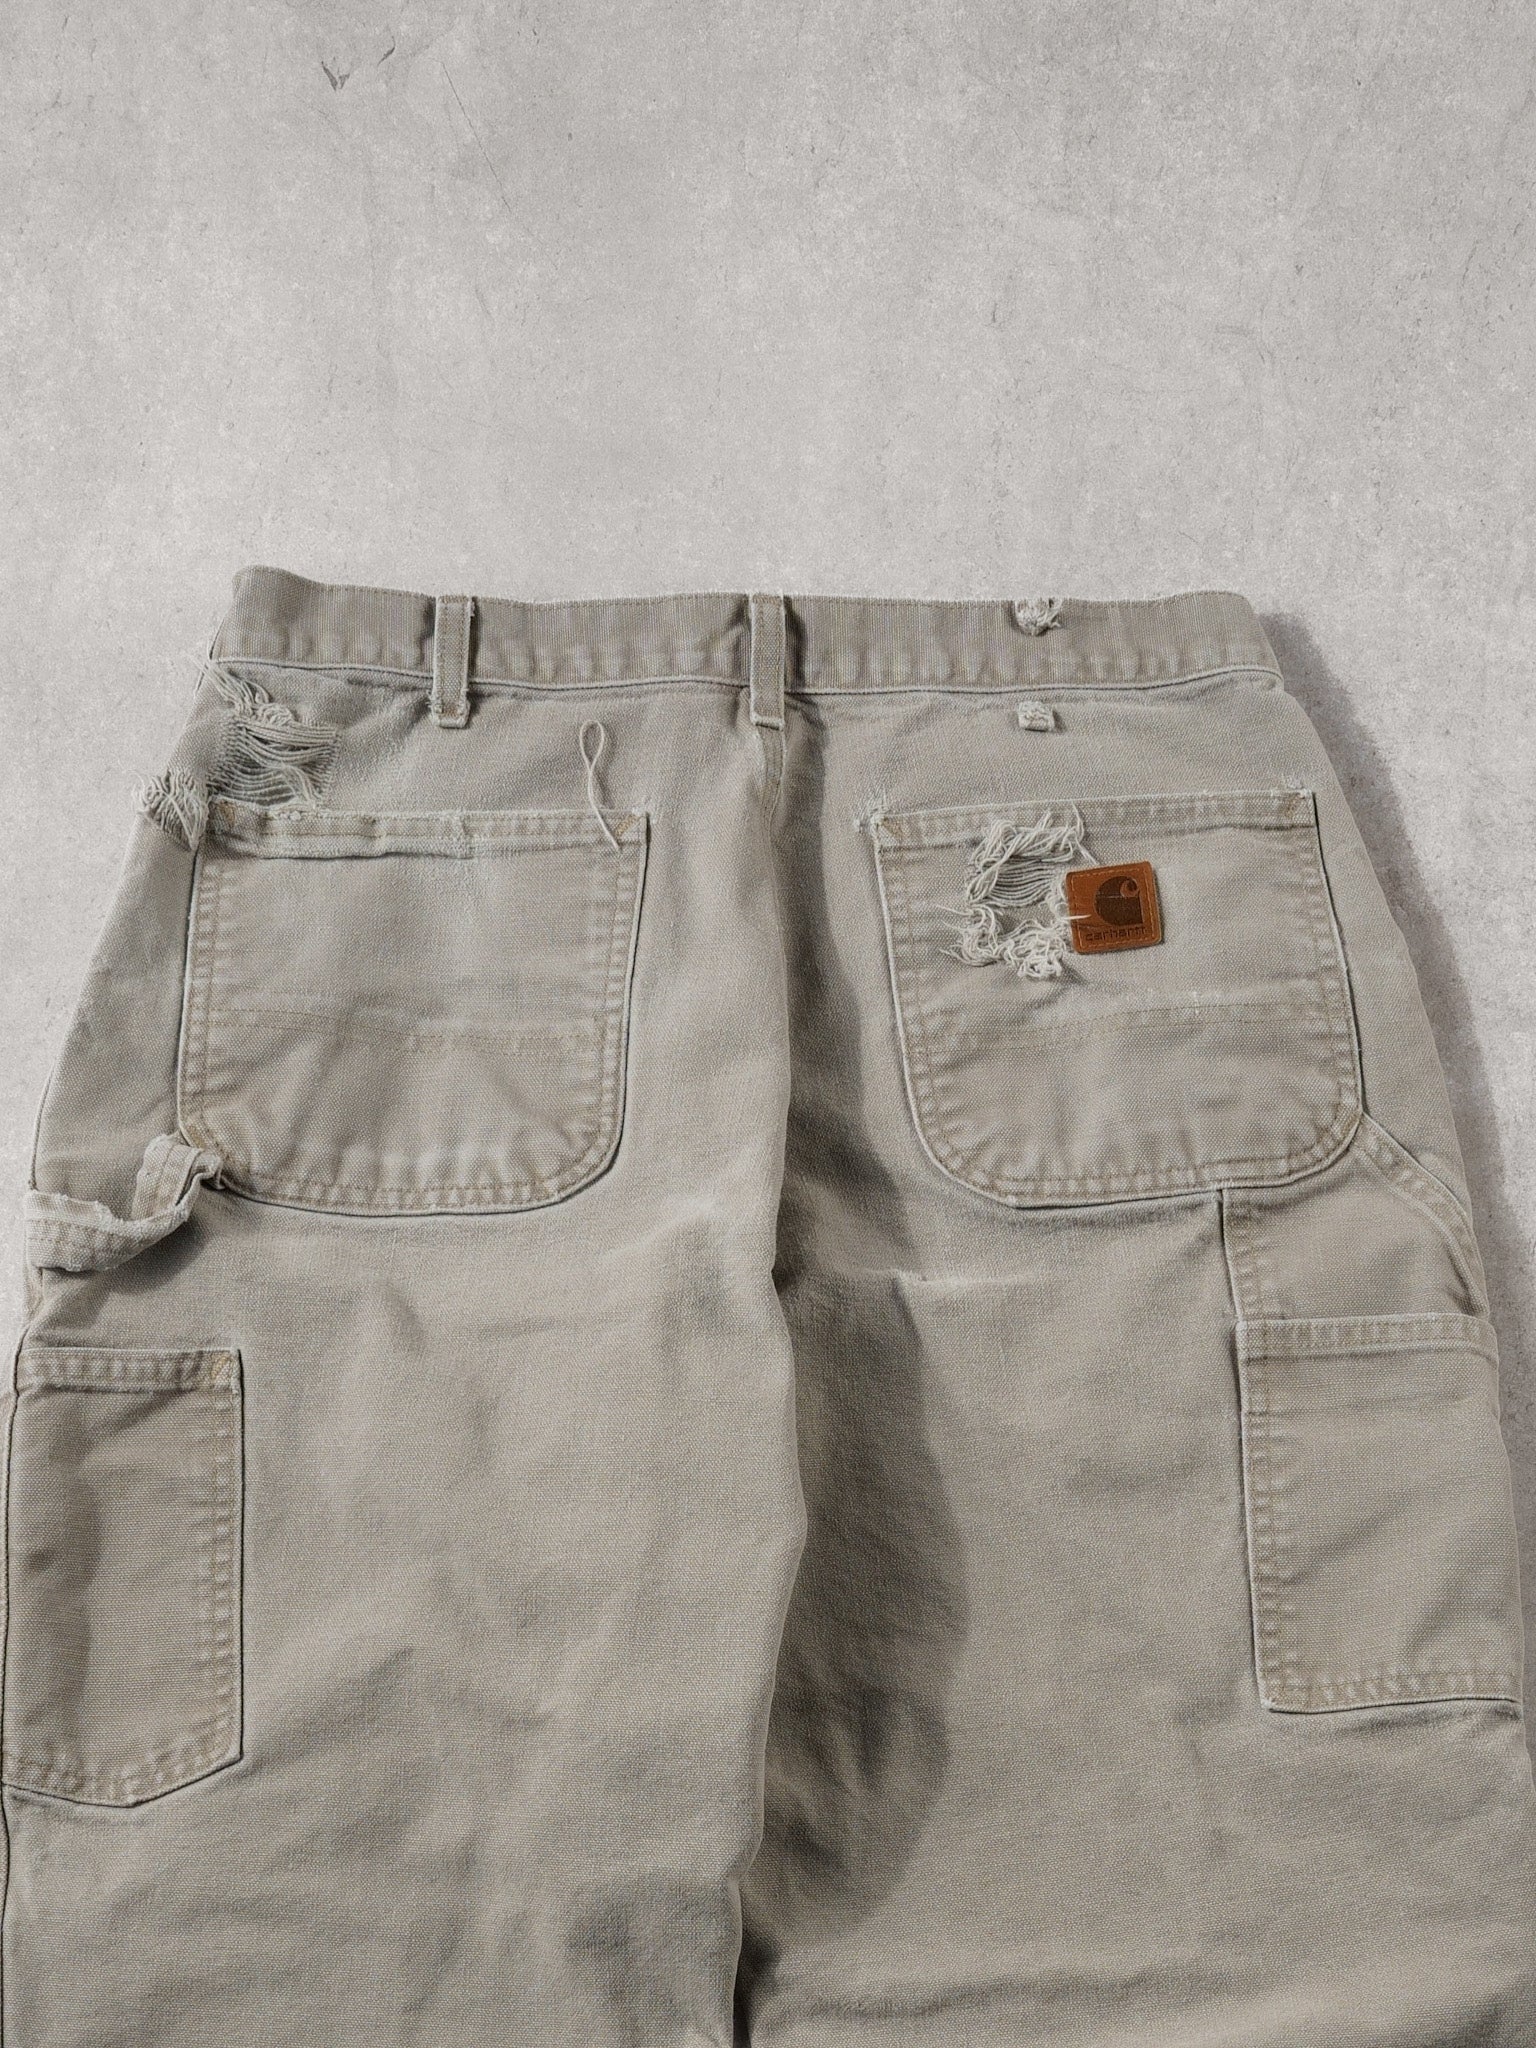 Vintage 90s Biege Carhartt Original Fit Carpenter Pants (32x30)